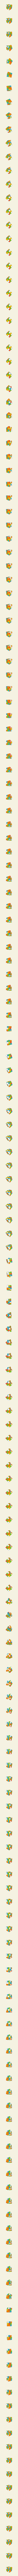 3x3 Cube #6